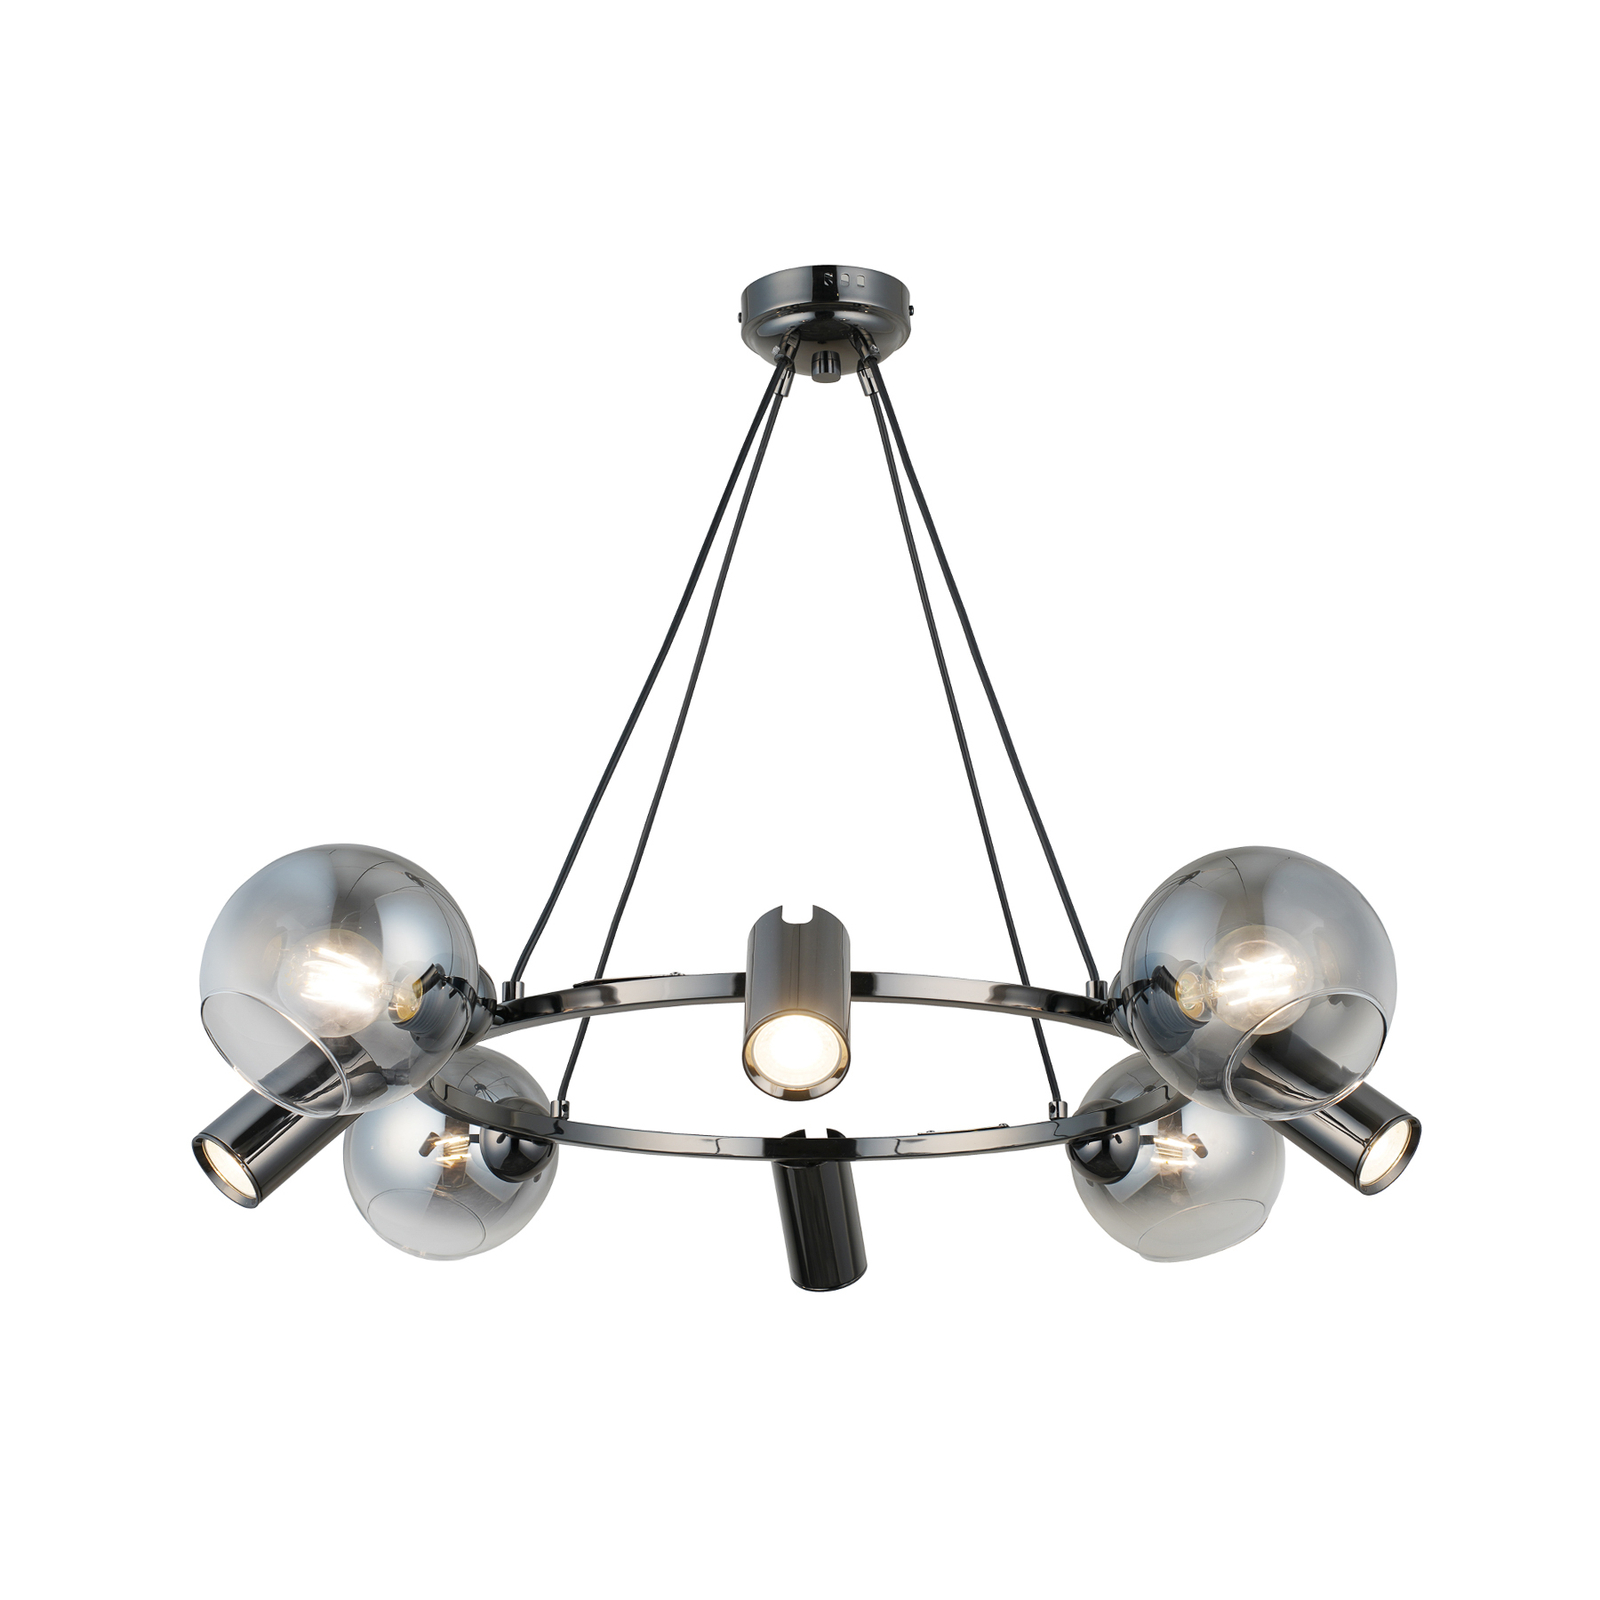 Hanglamp Zerde 4+4 Ø 82 cm zwart-chroom 8-lamps